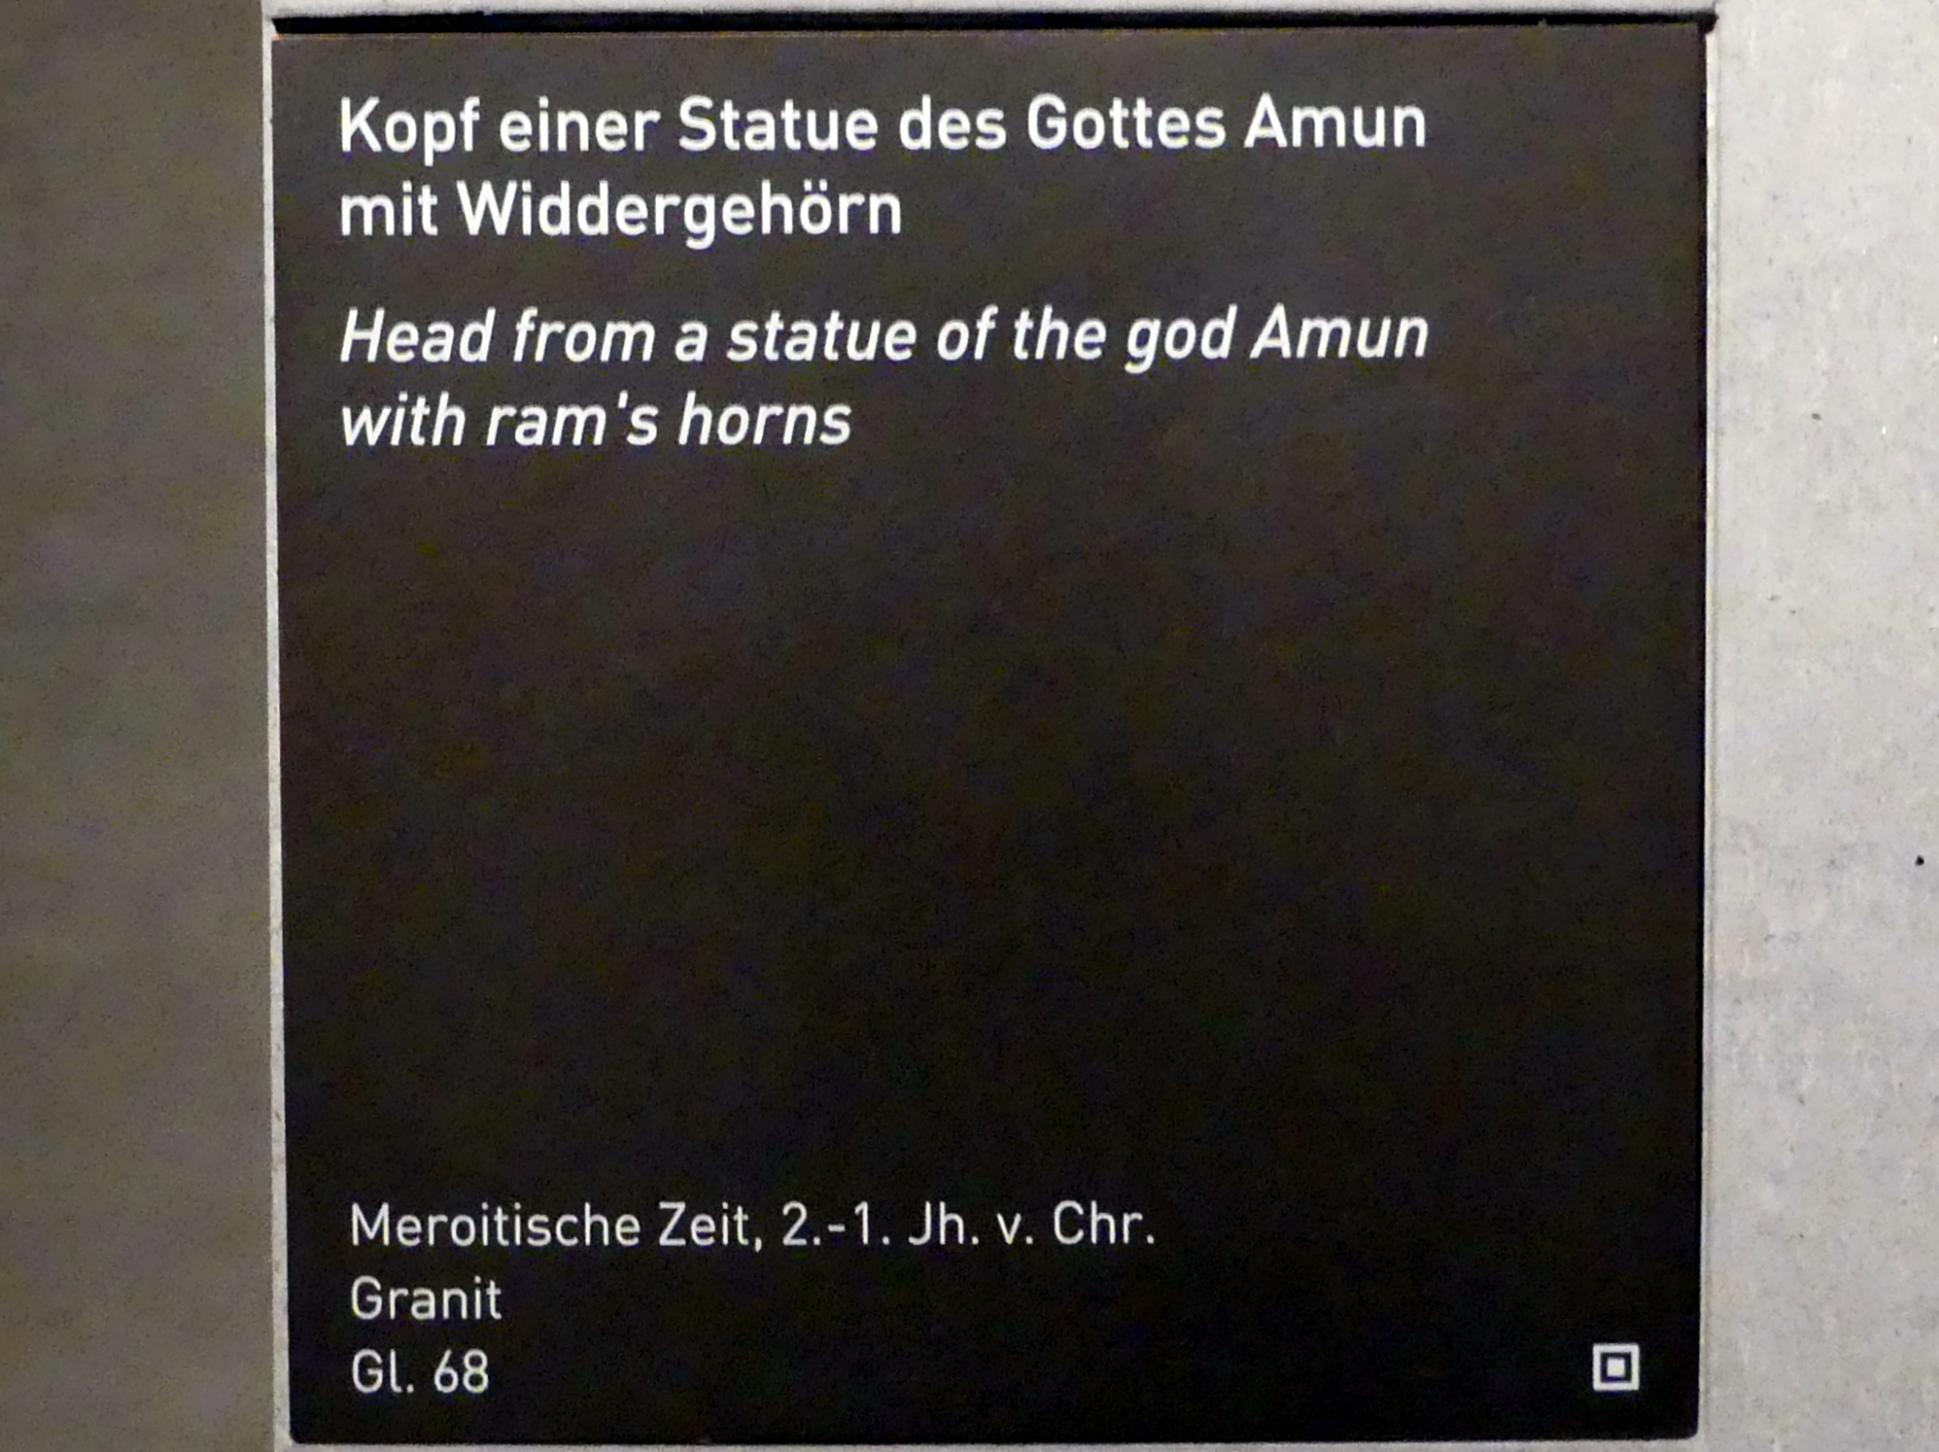 Kopf einer Statue des Gottes Amun mit Widderhörnern, Meroitische Zeit, 200 v. Chr. - 500 n. Chr., 200 - 1 v. Chr., Bild 4/4